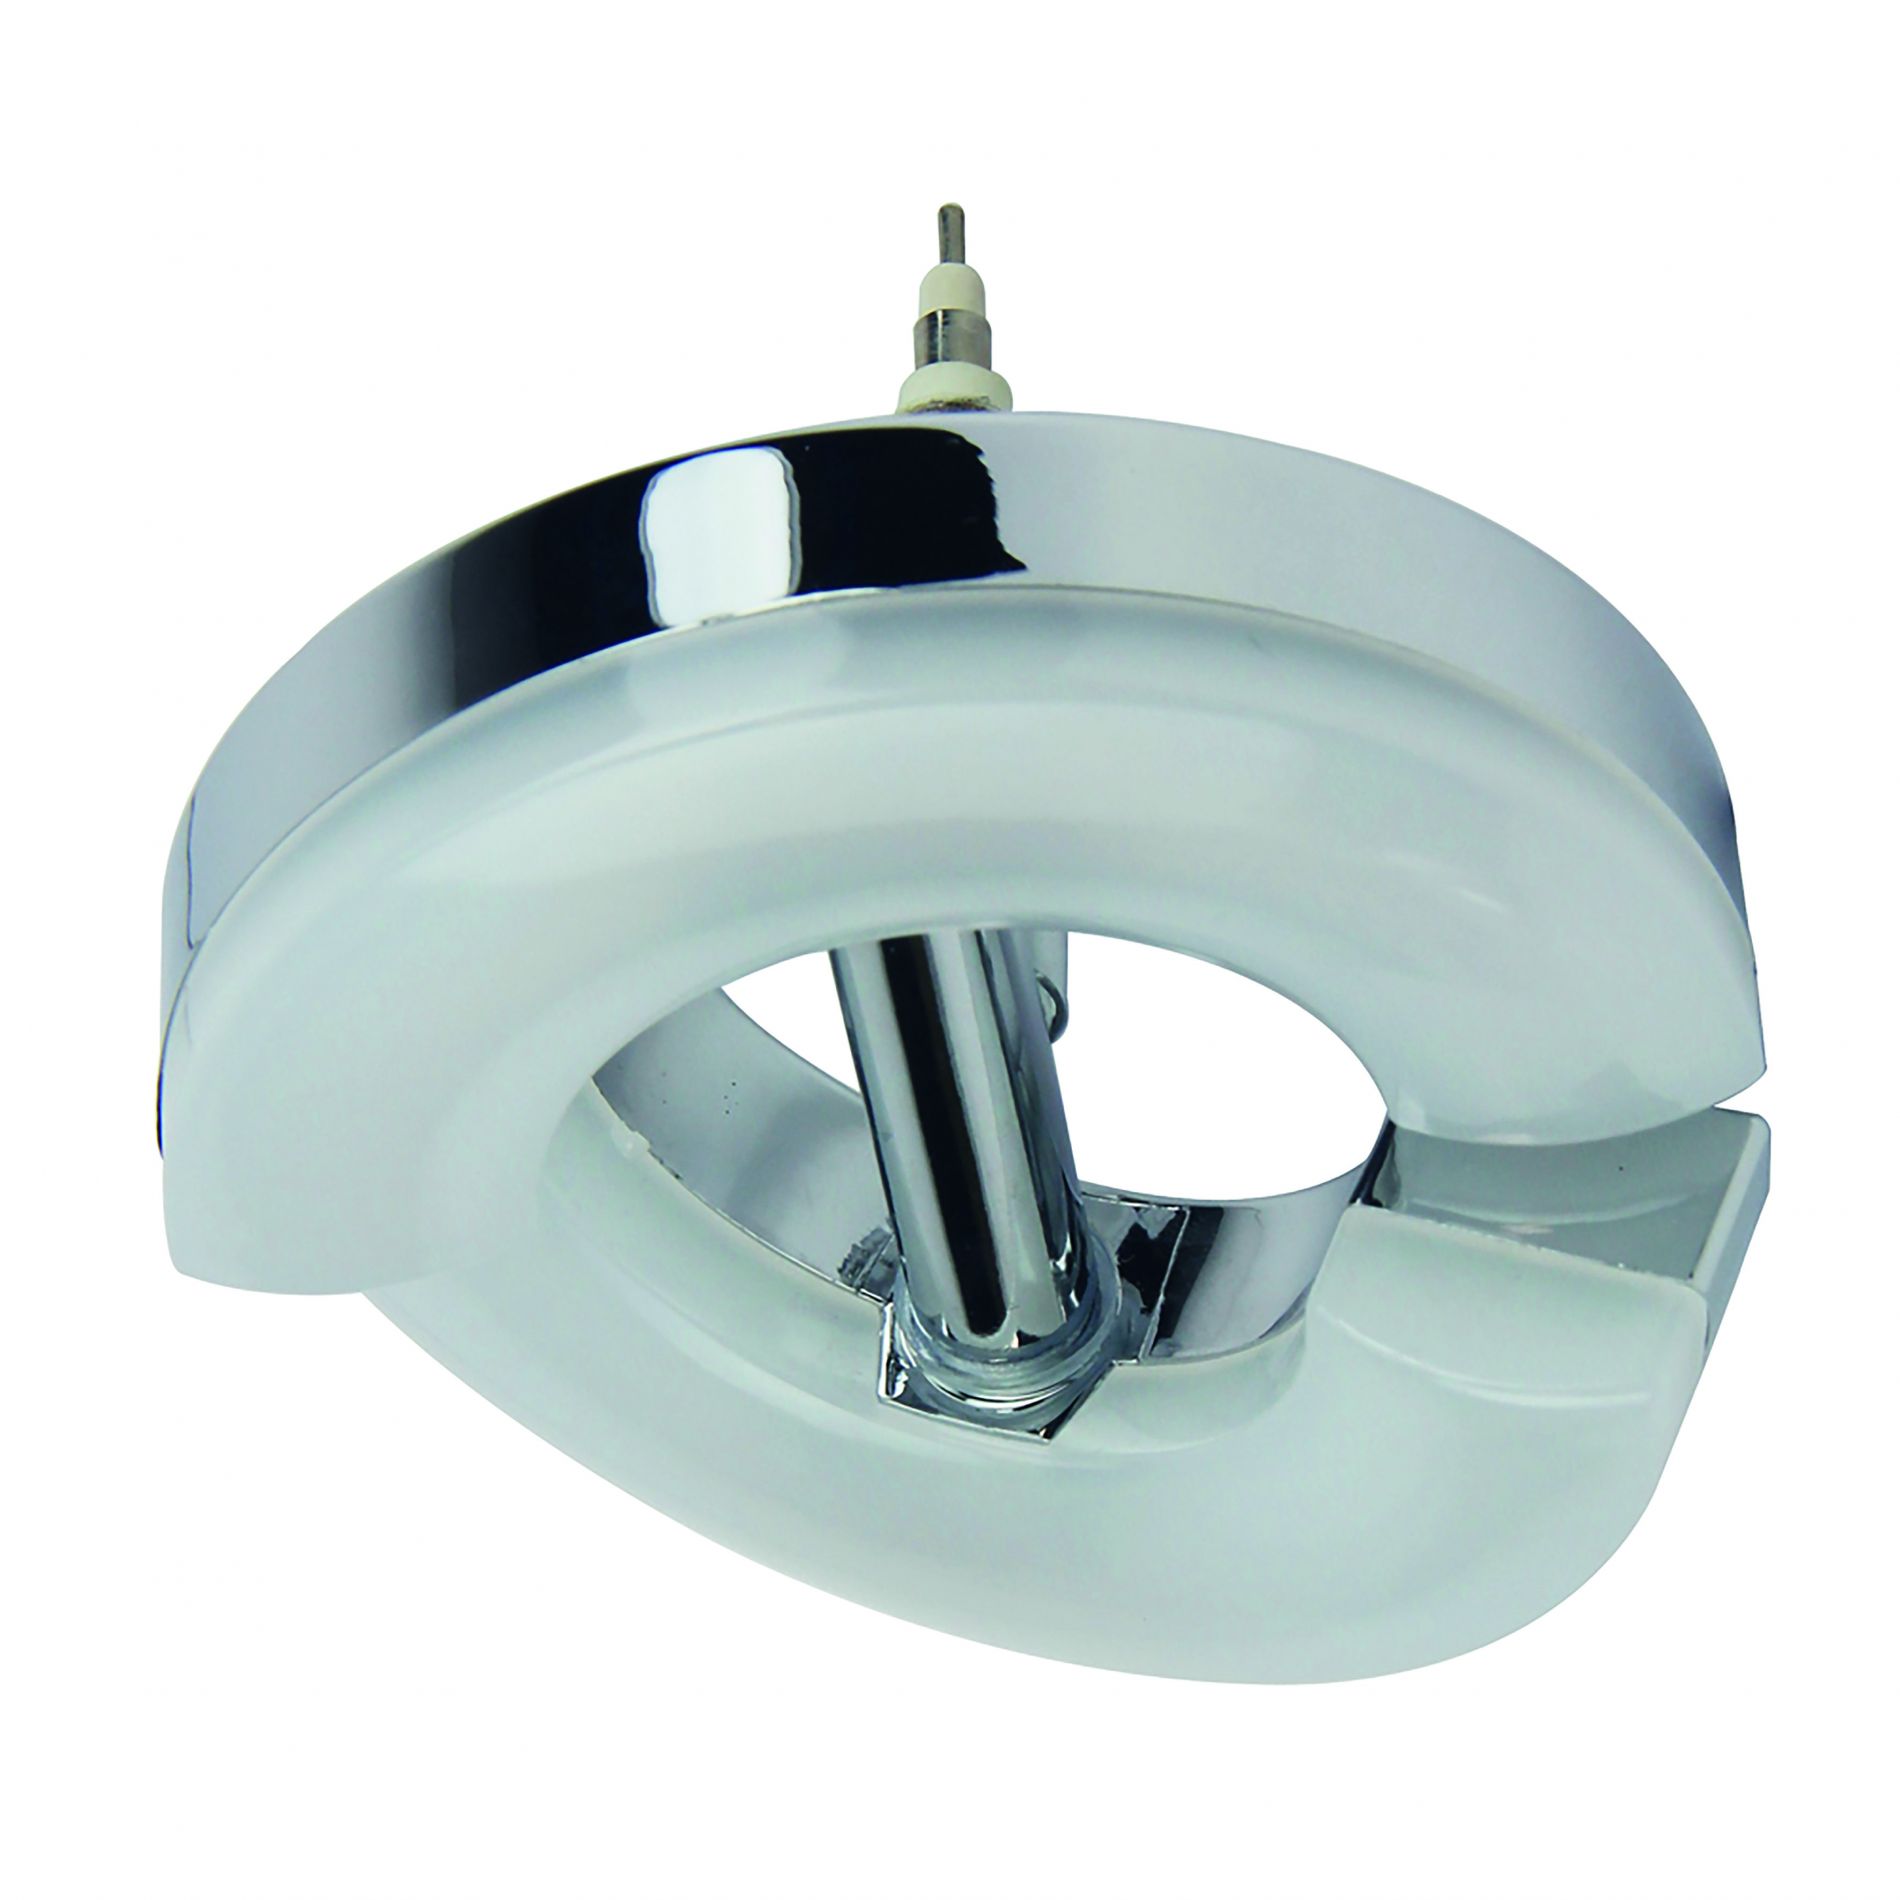 Diffuseur orientable LED rond REMIXLED argenté/blanc en métal/PVC